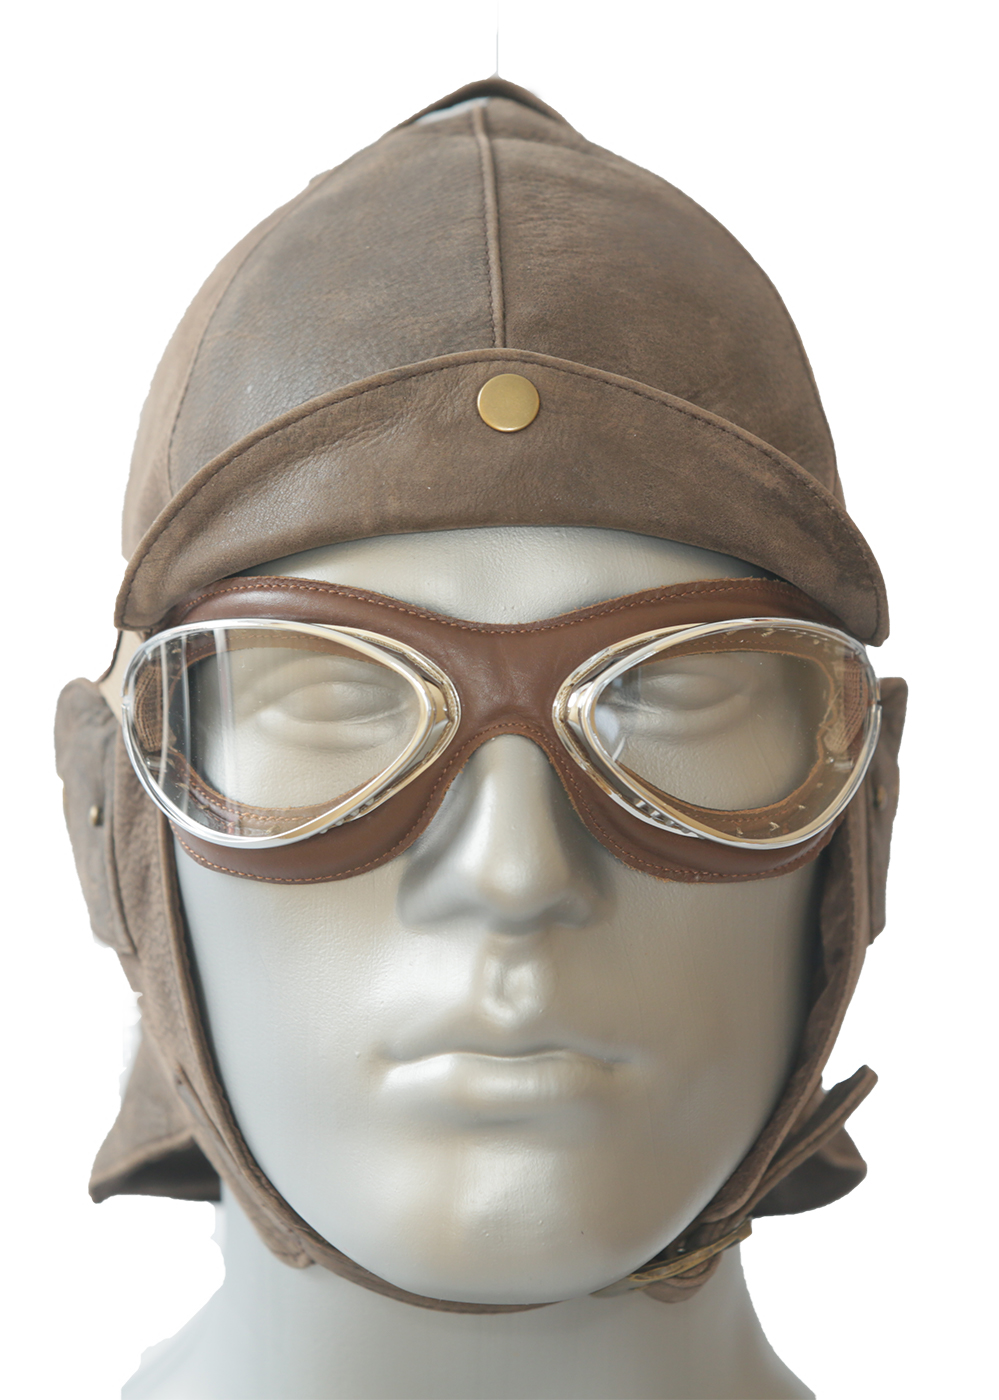 Aviator Brille in Chrom mit weicher Gesichtsauflage in braun 4602-MCB